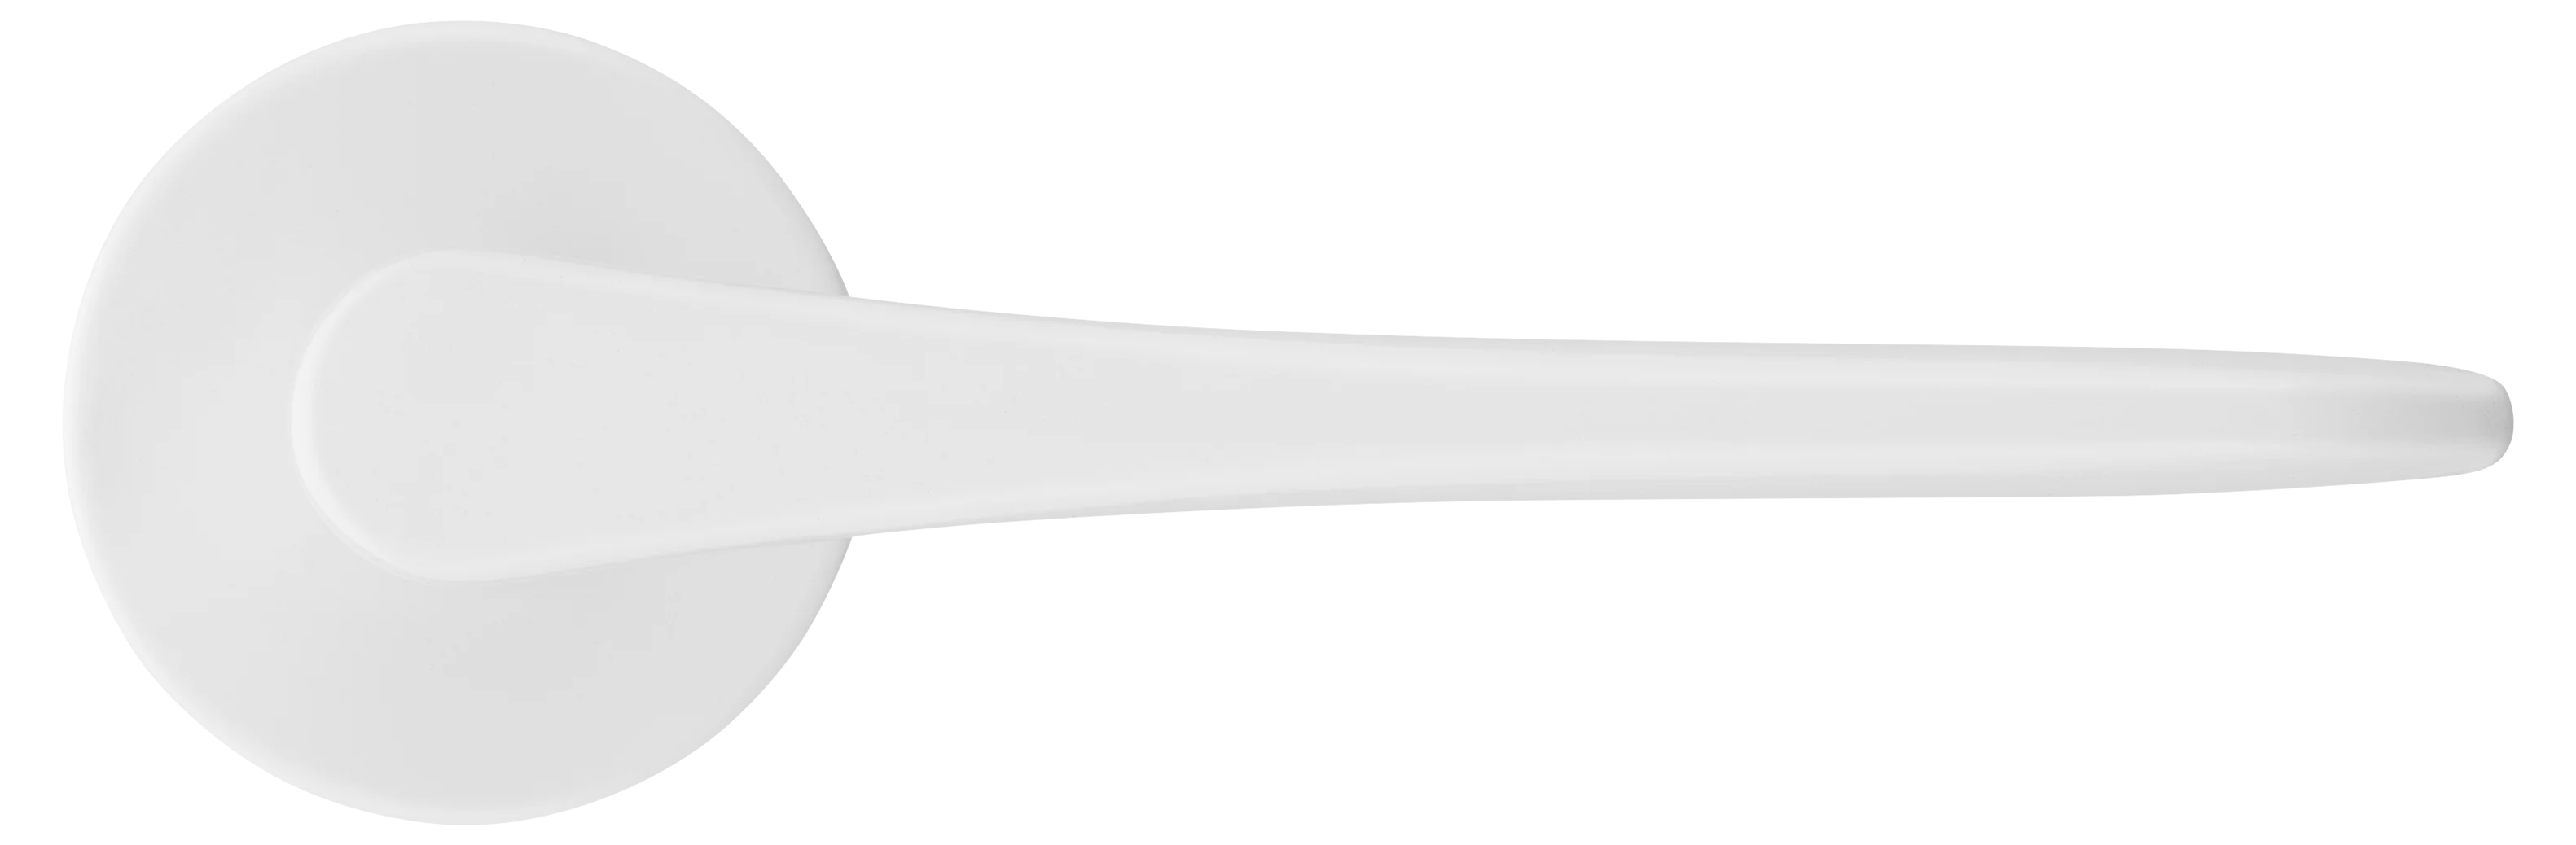 AULA R5 BIA, ручка дверная на розетке 7мм, цвет -  белый фото купить в Уральске